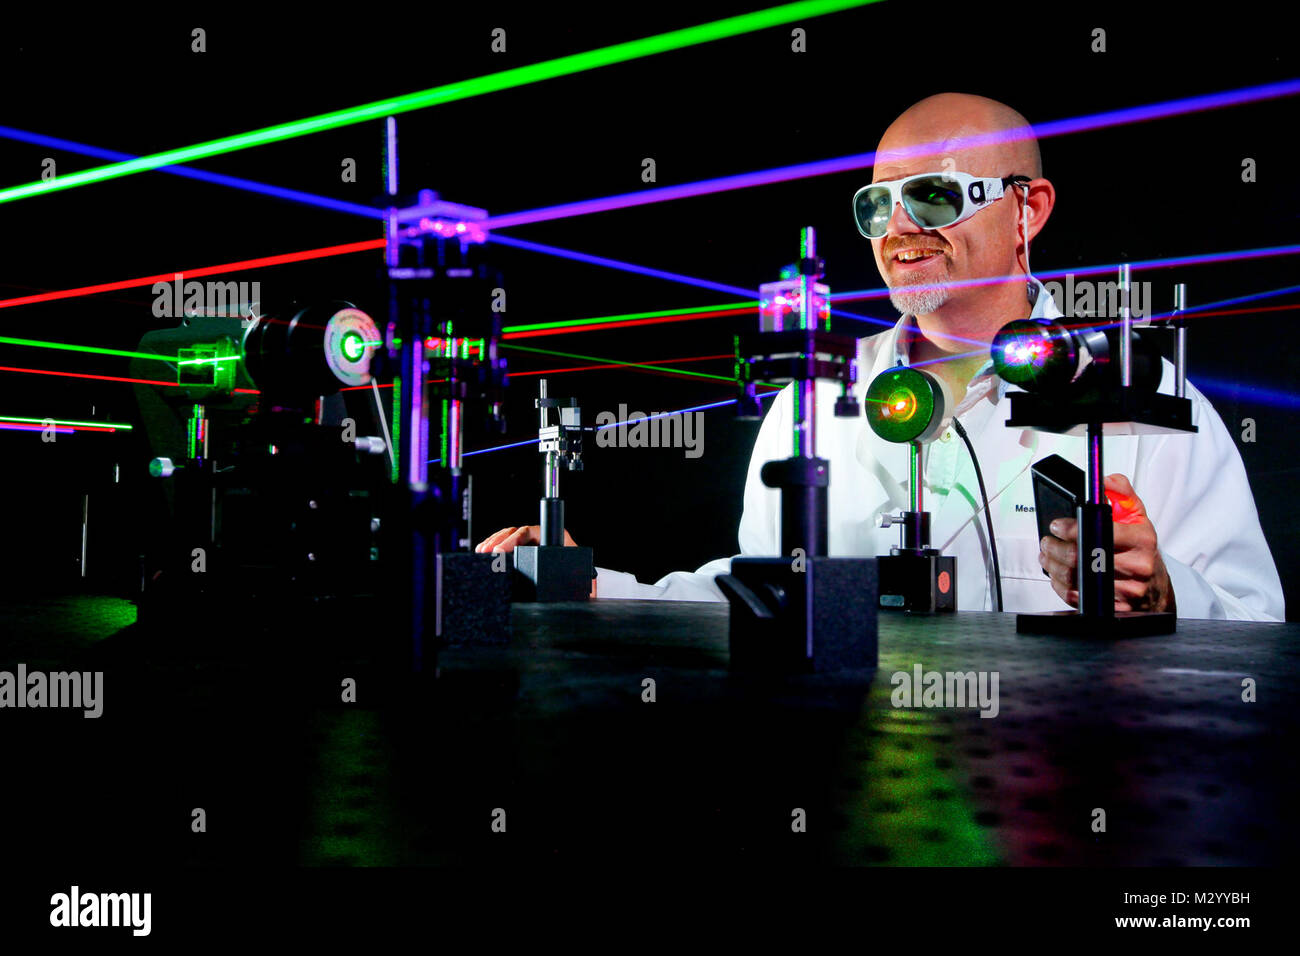 Laser a microonde immagini e fotografie stock ad alta risoluzione - Alamy